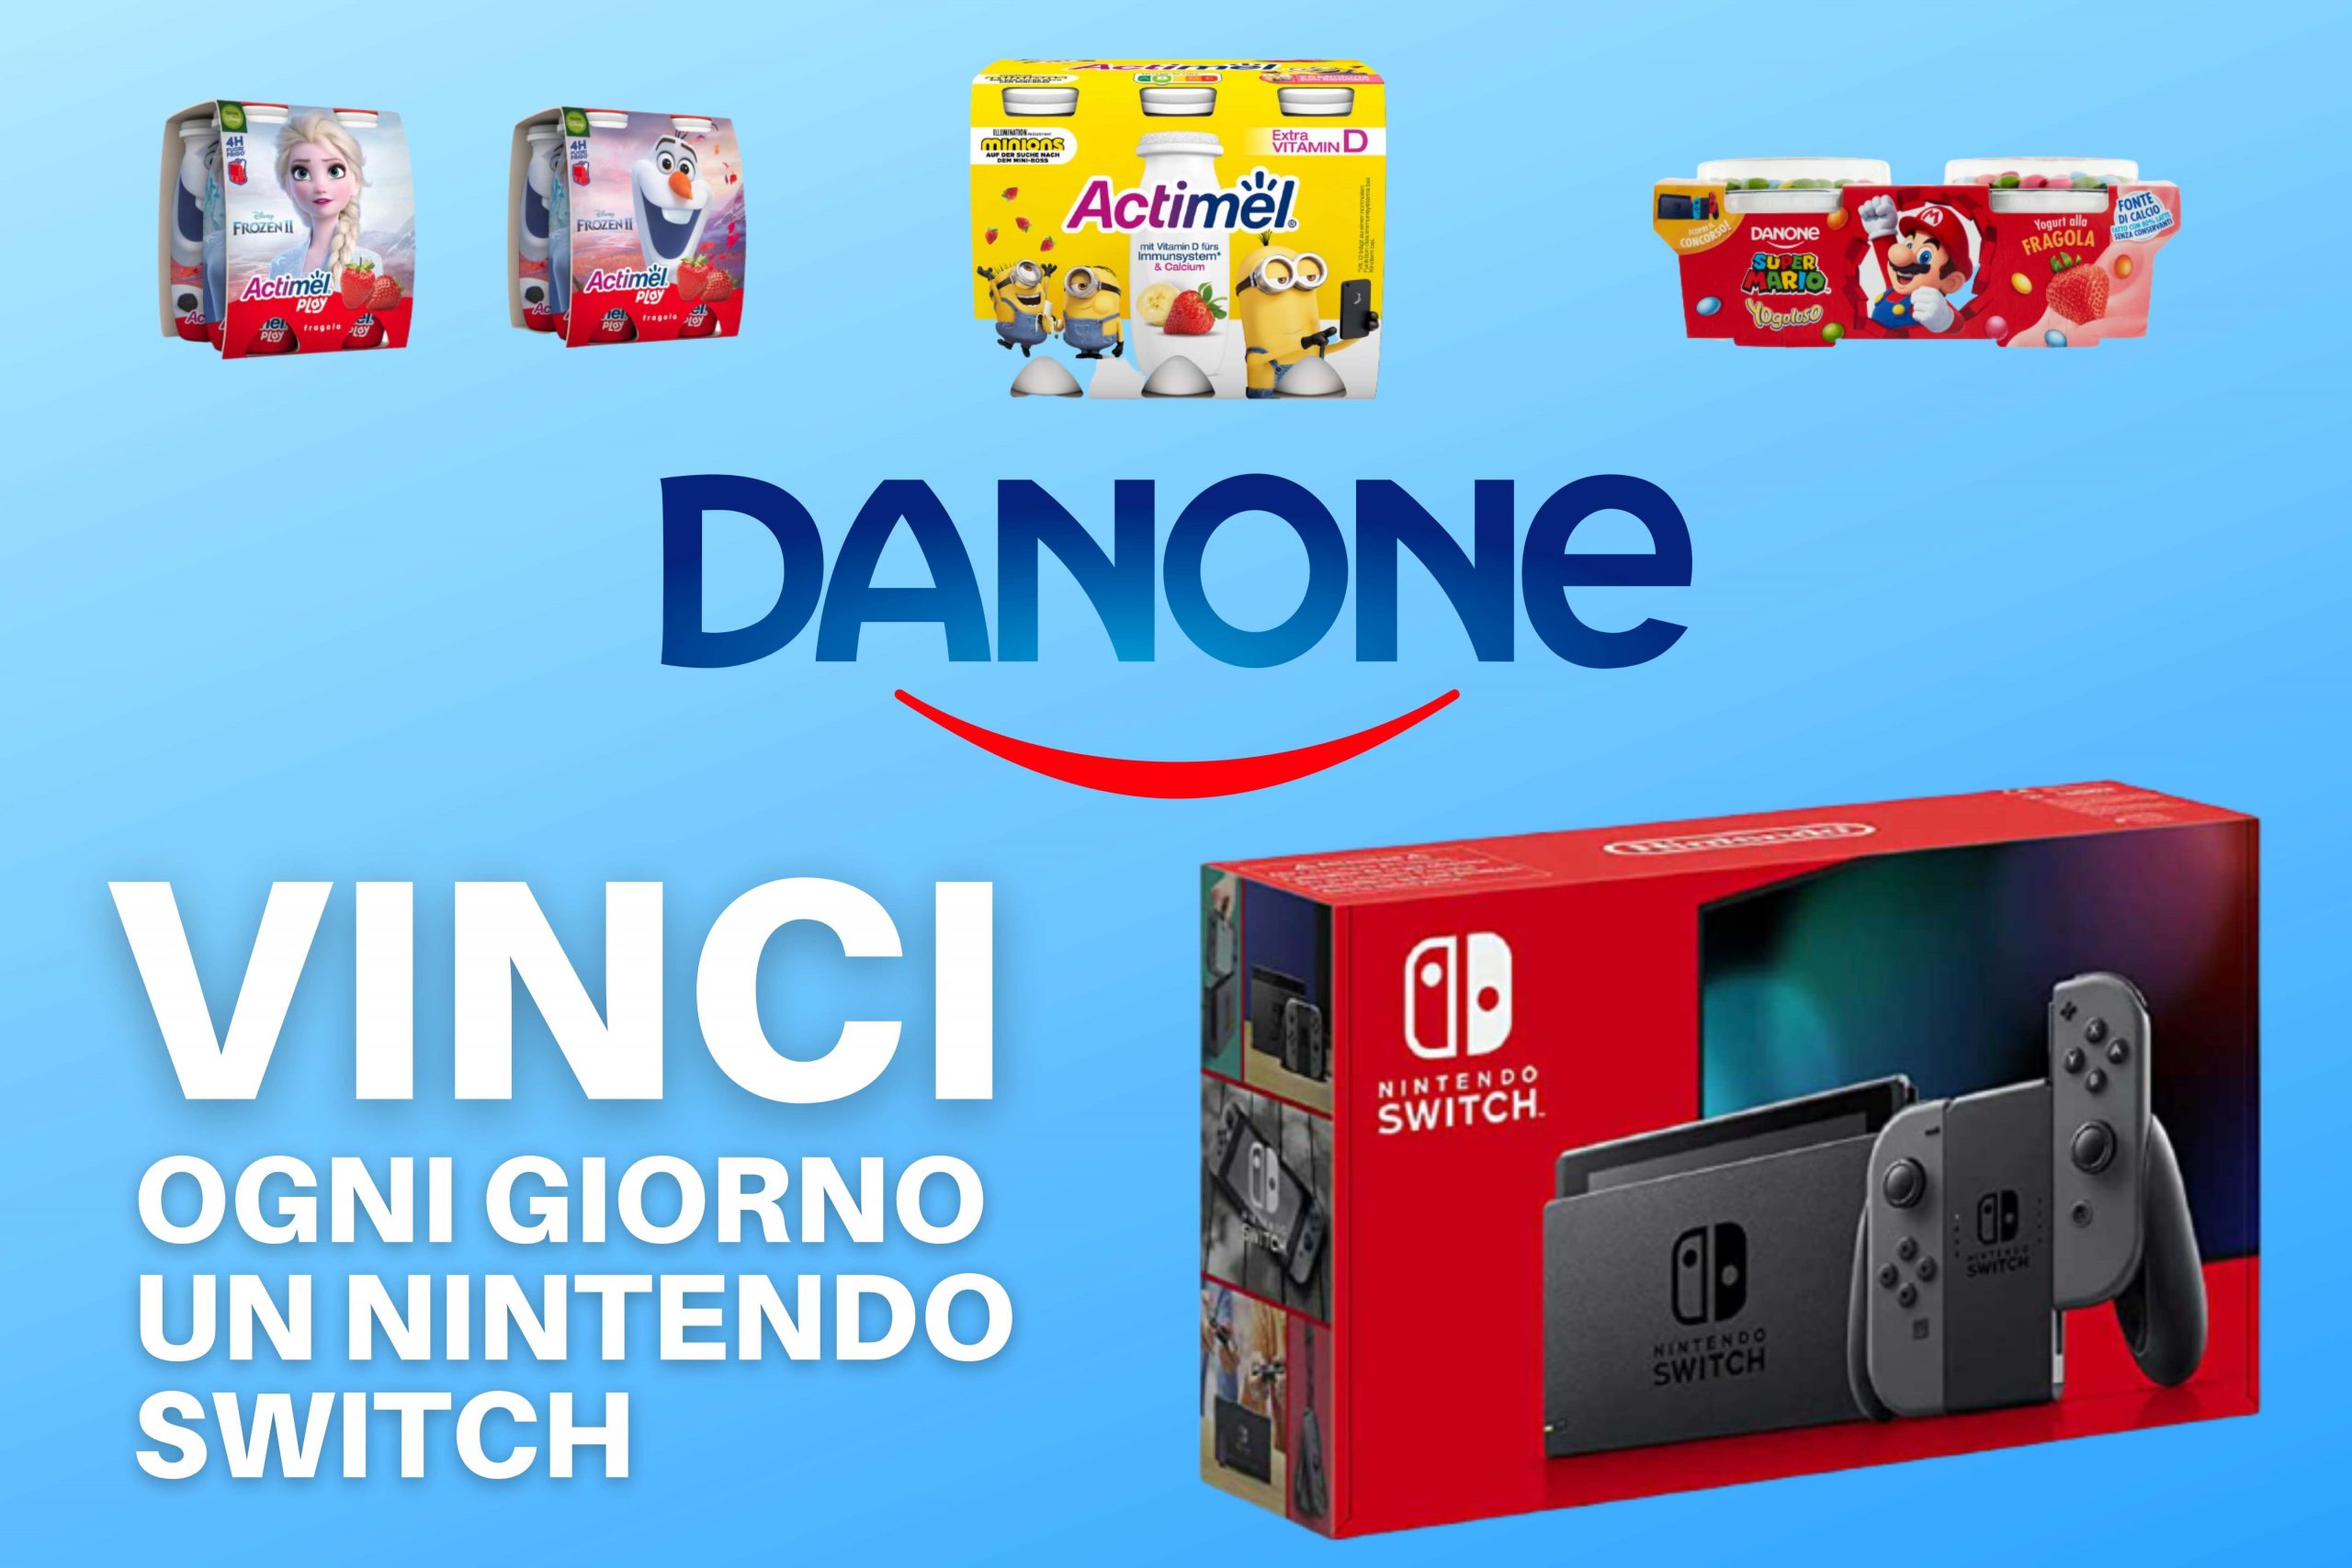 Danette, Yogoloso e Actimel: Vinci Nintendo Switch con il concorso “Che forza la tua merenda”